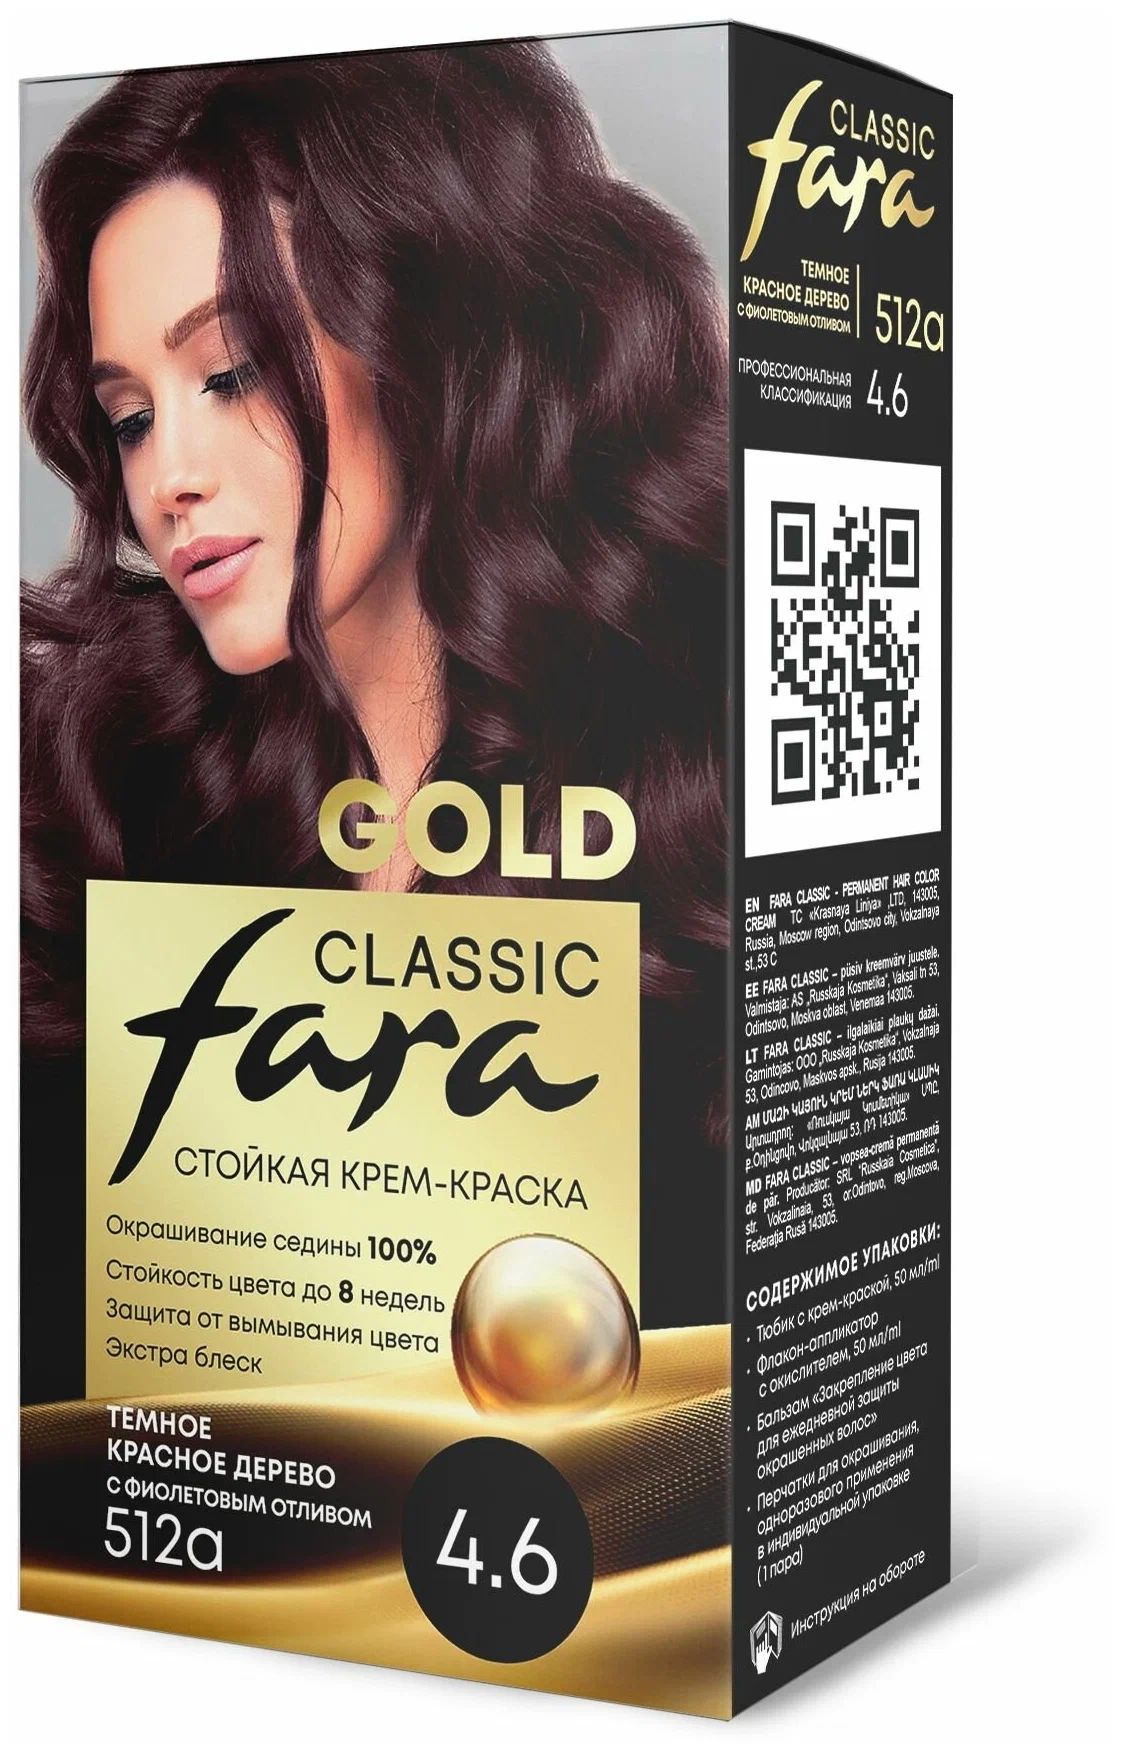 Крем-краска для волос Fara Classic Gold 512А красное дерево 4.6, 140 г freshman расческа мужская для волос collection carbon